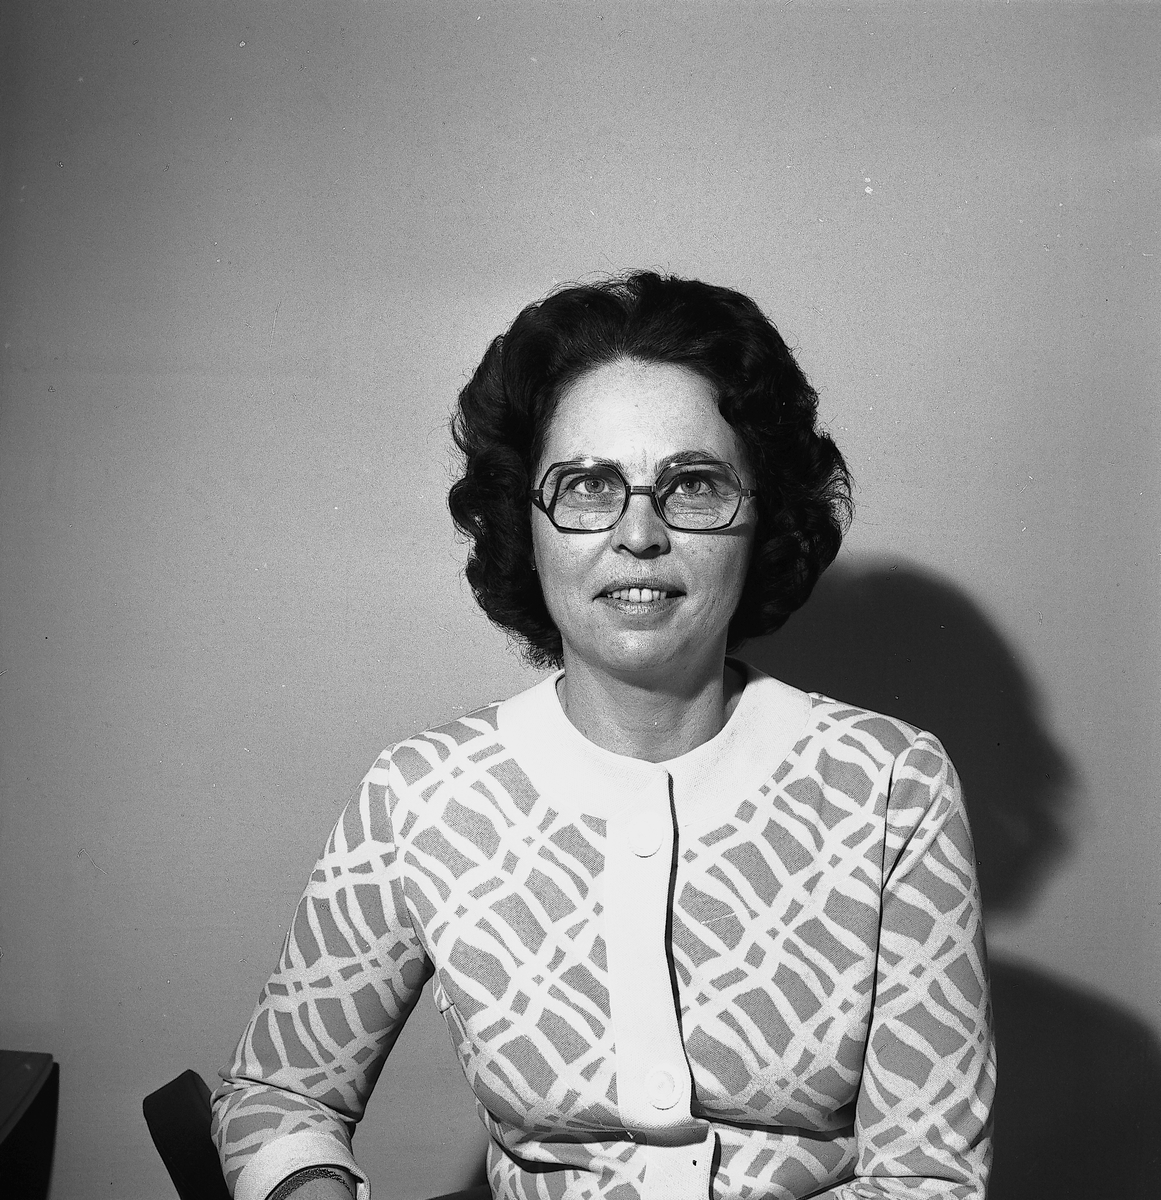 Okänd kvinna jobbar på Handels Avdelning 19. Gävle. Den 29 december 1972



